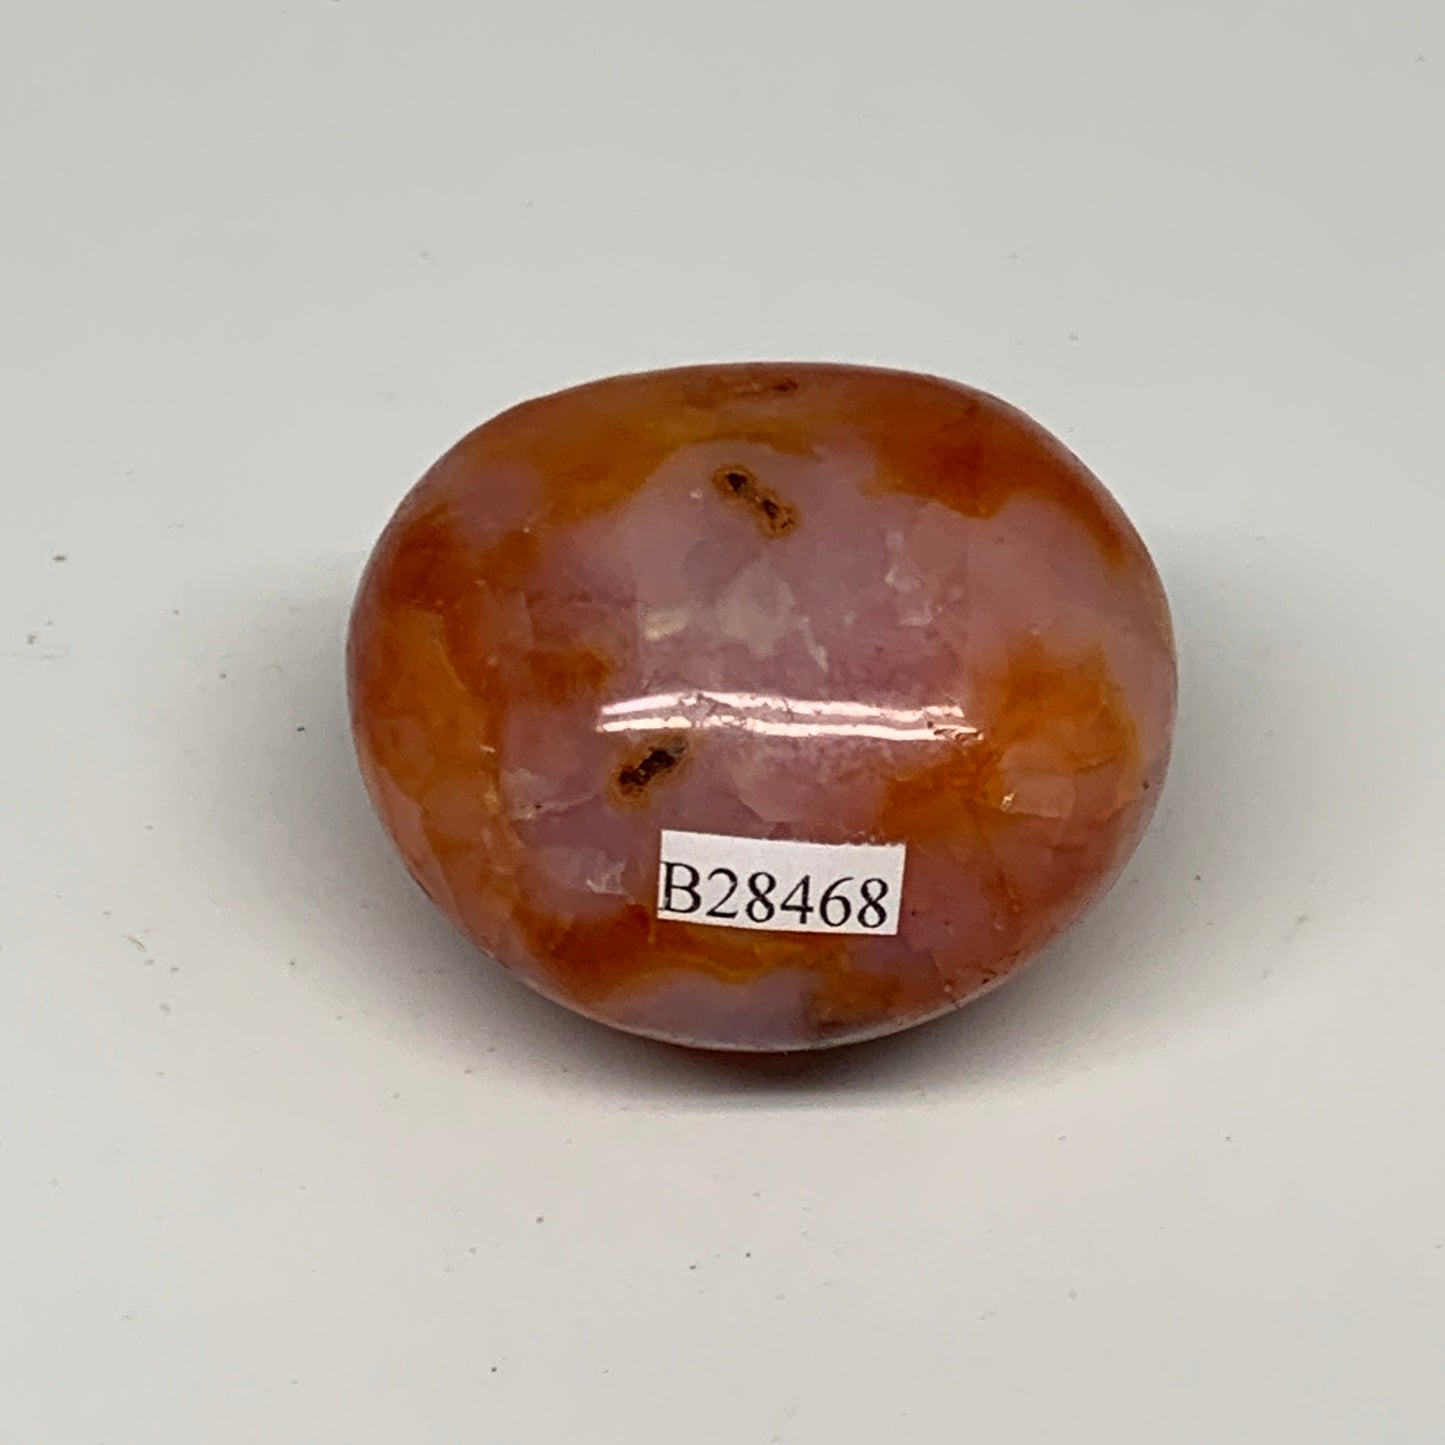 98.6g, 2"x1.6"x1.4", Red Carnelian Palm-Stone Gem Crystal Polished, B28468